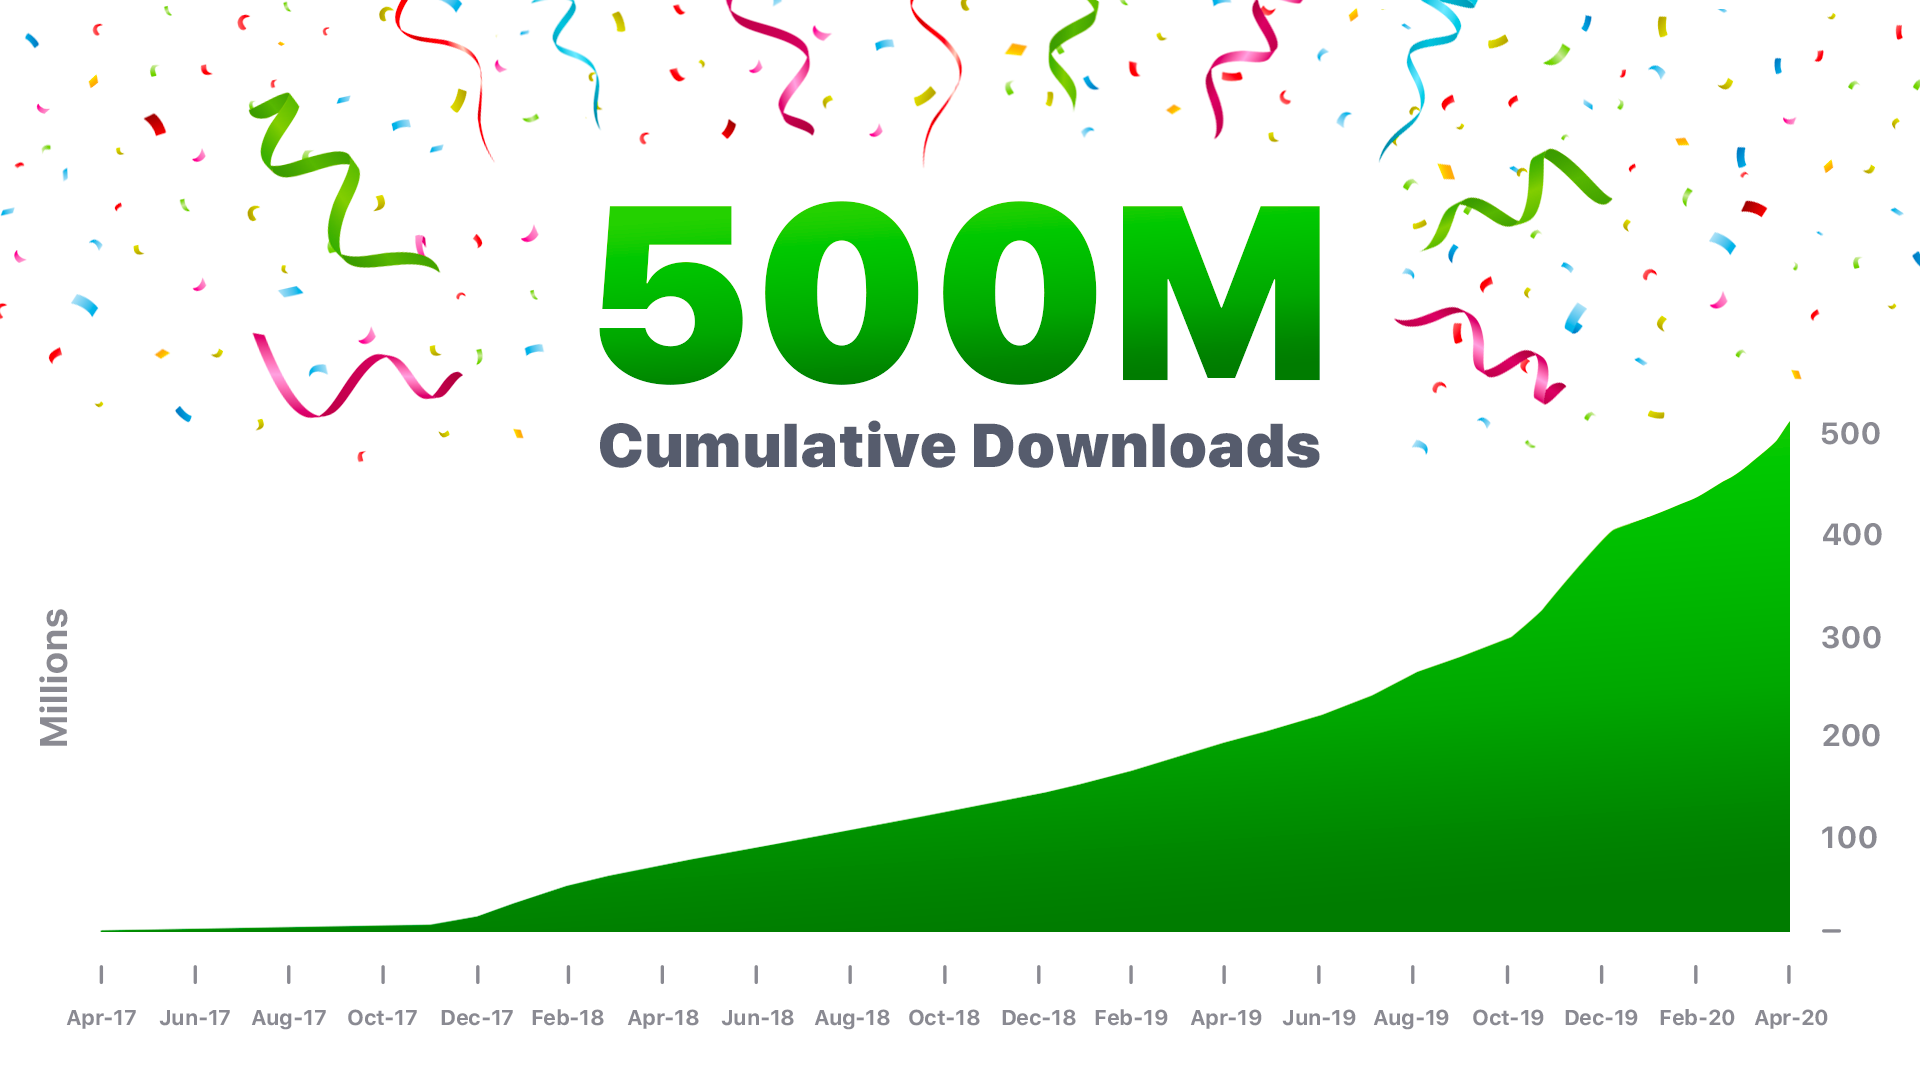 Easybrain gets over 500,000,000 downloads